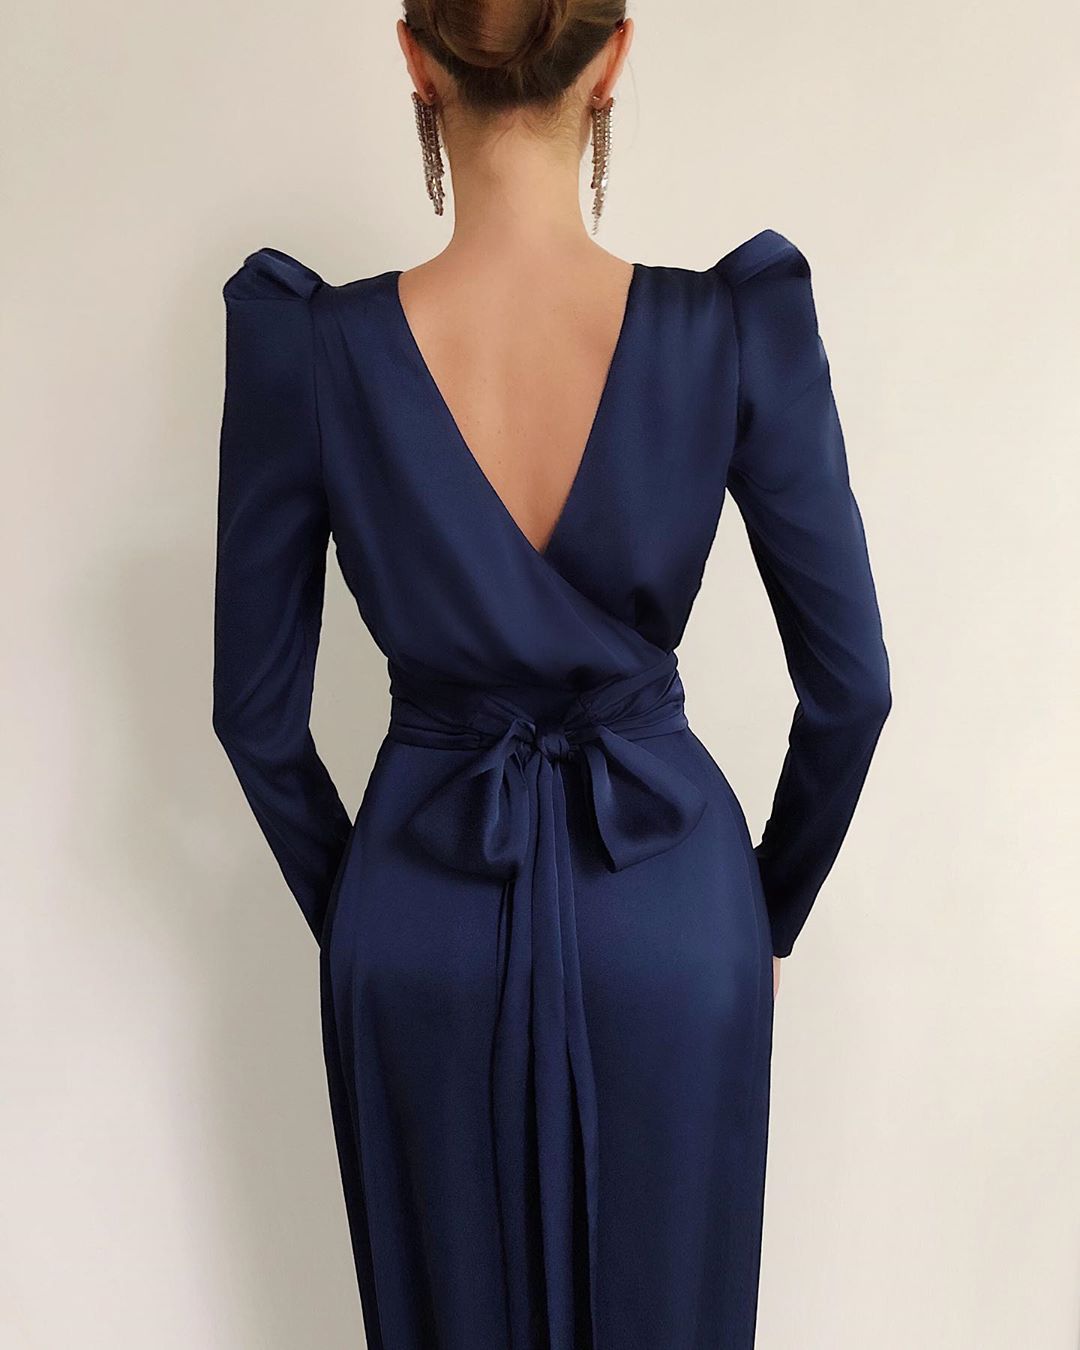 LN-family.com - New
Платье на запахе с открытой спиной и разрезом доступно в новом глубоком синем оттенке. Платье имеет съемный пояс, который завязывается сзади на бант.
Посмотрите все доступные цвета...